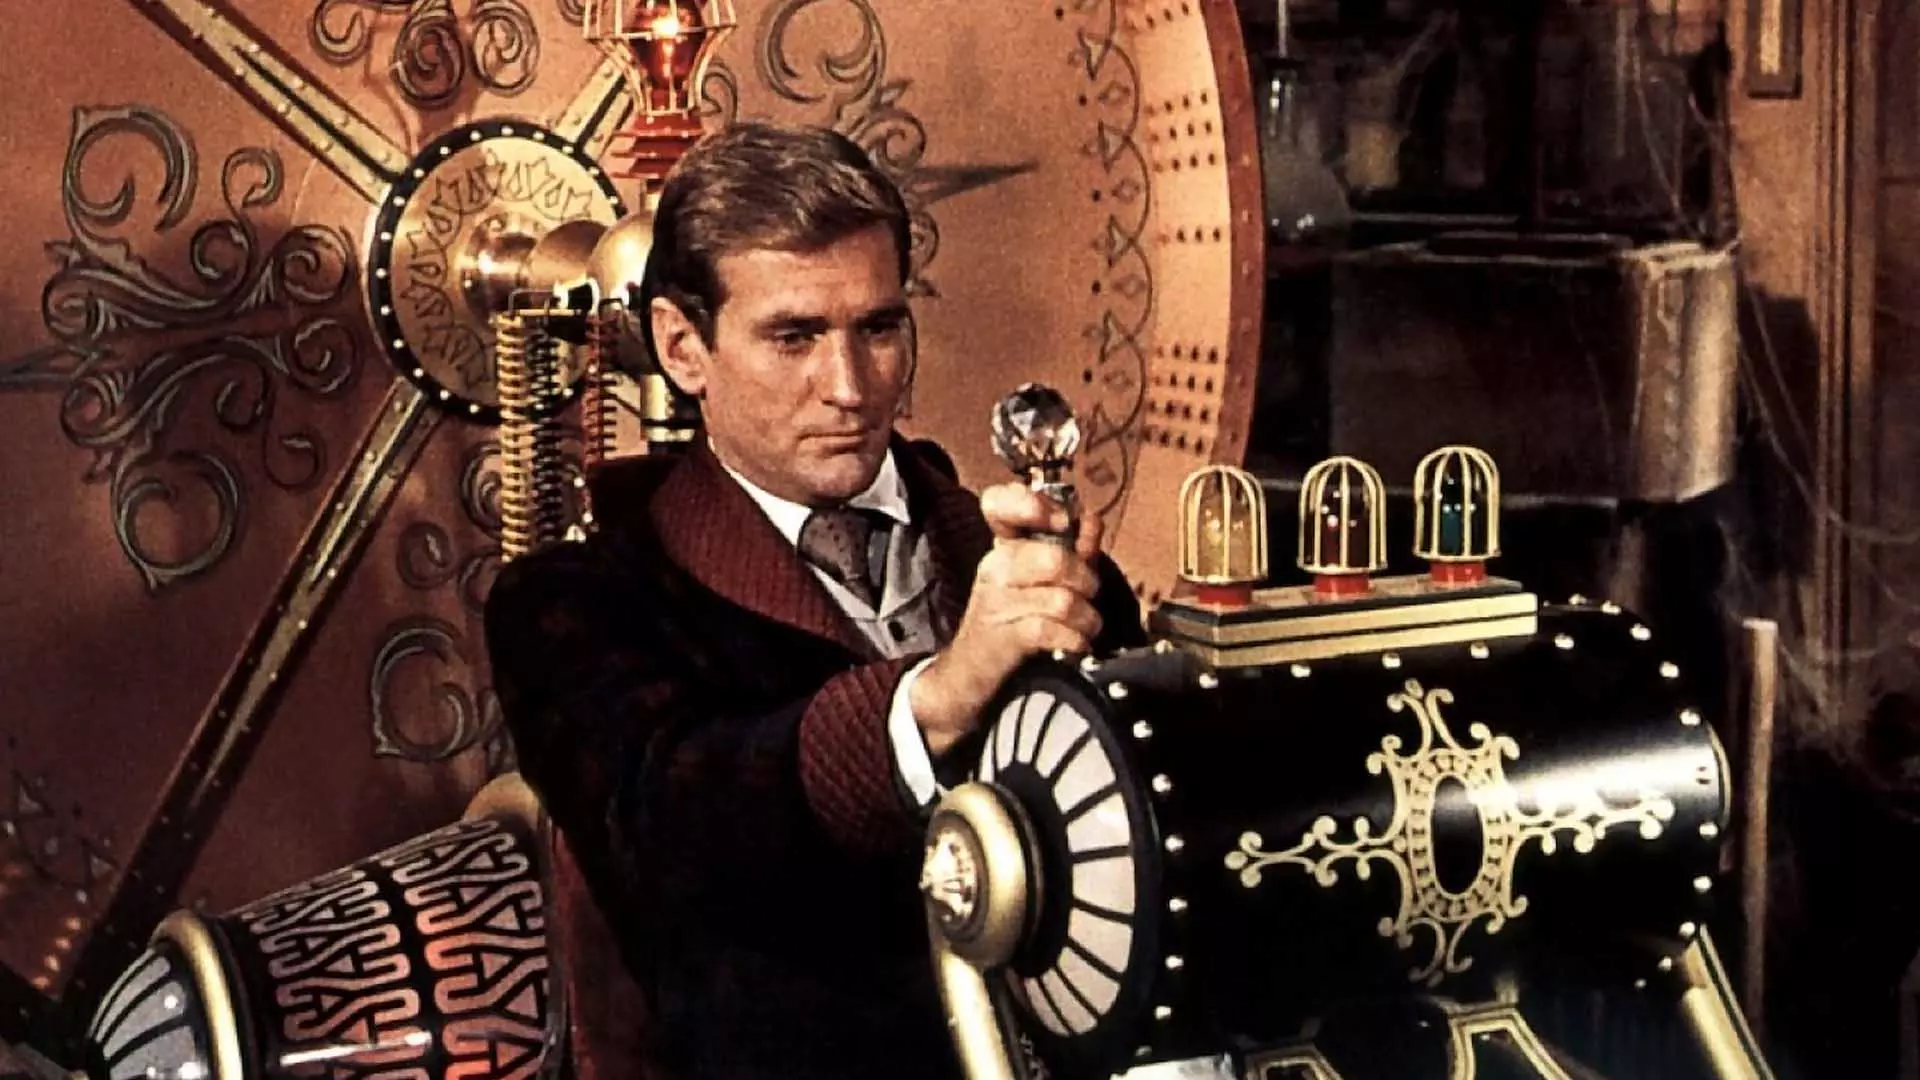 رود تیلور در حال کار کردن با یک دستگاه خاص در فیلم The Time Machine